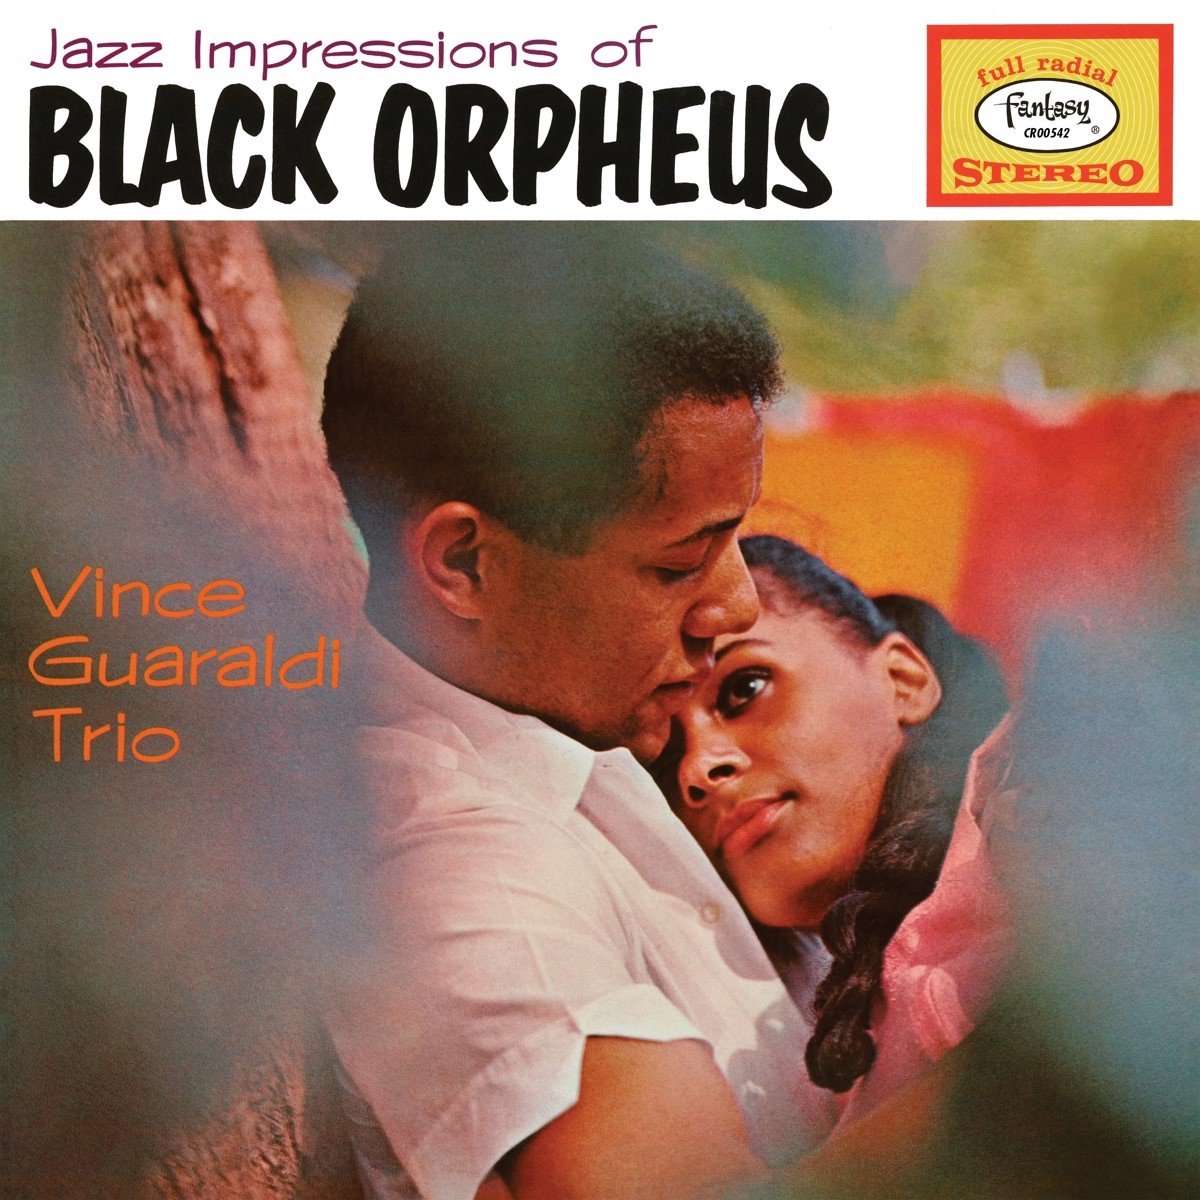 Guaraldi Trio, Vince Jazz Impressions Of Black Orpheus